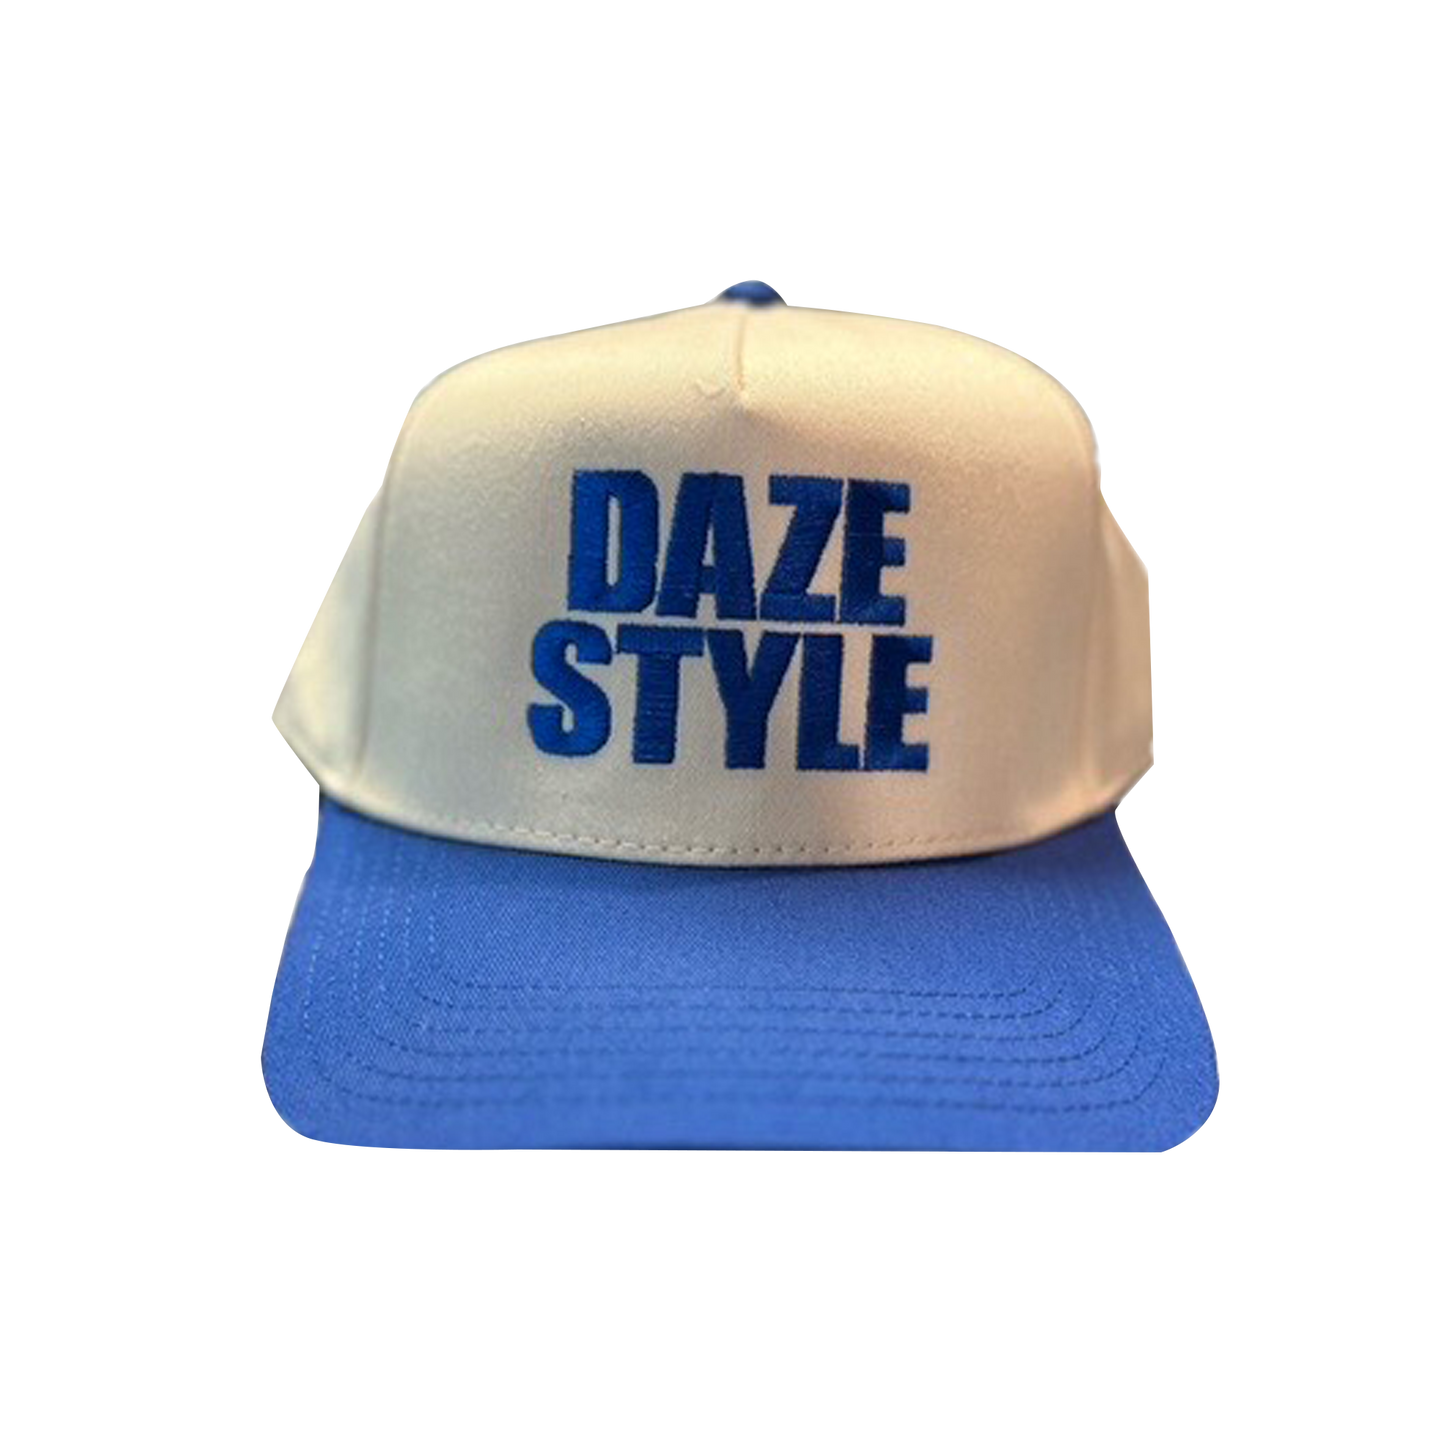 DAZE - Daze Style Hat (Natural/Royal Blue)